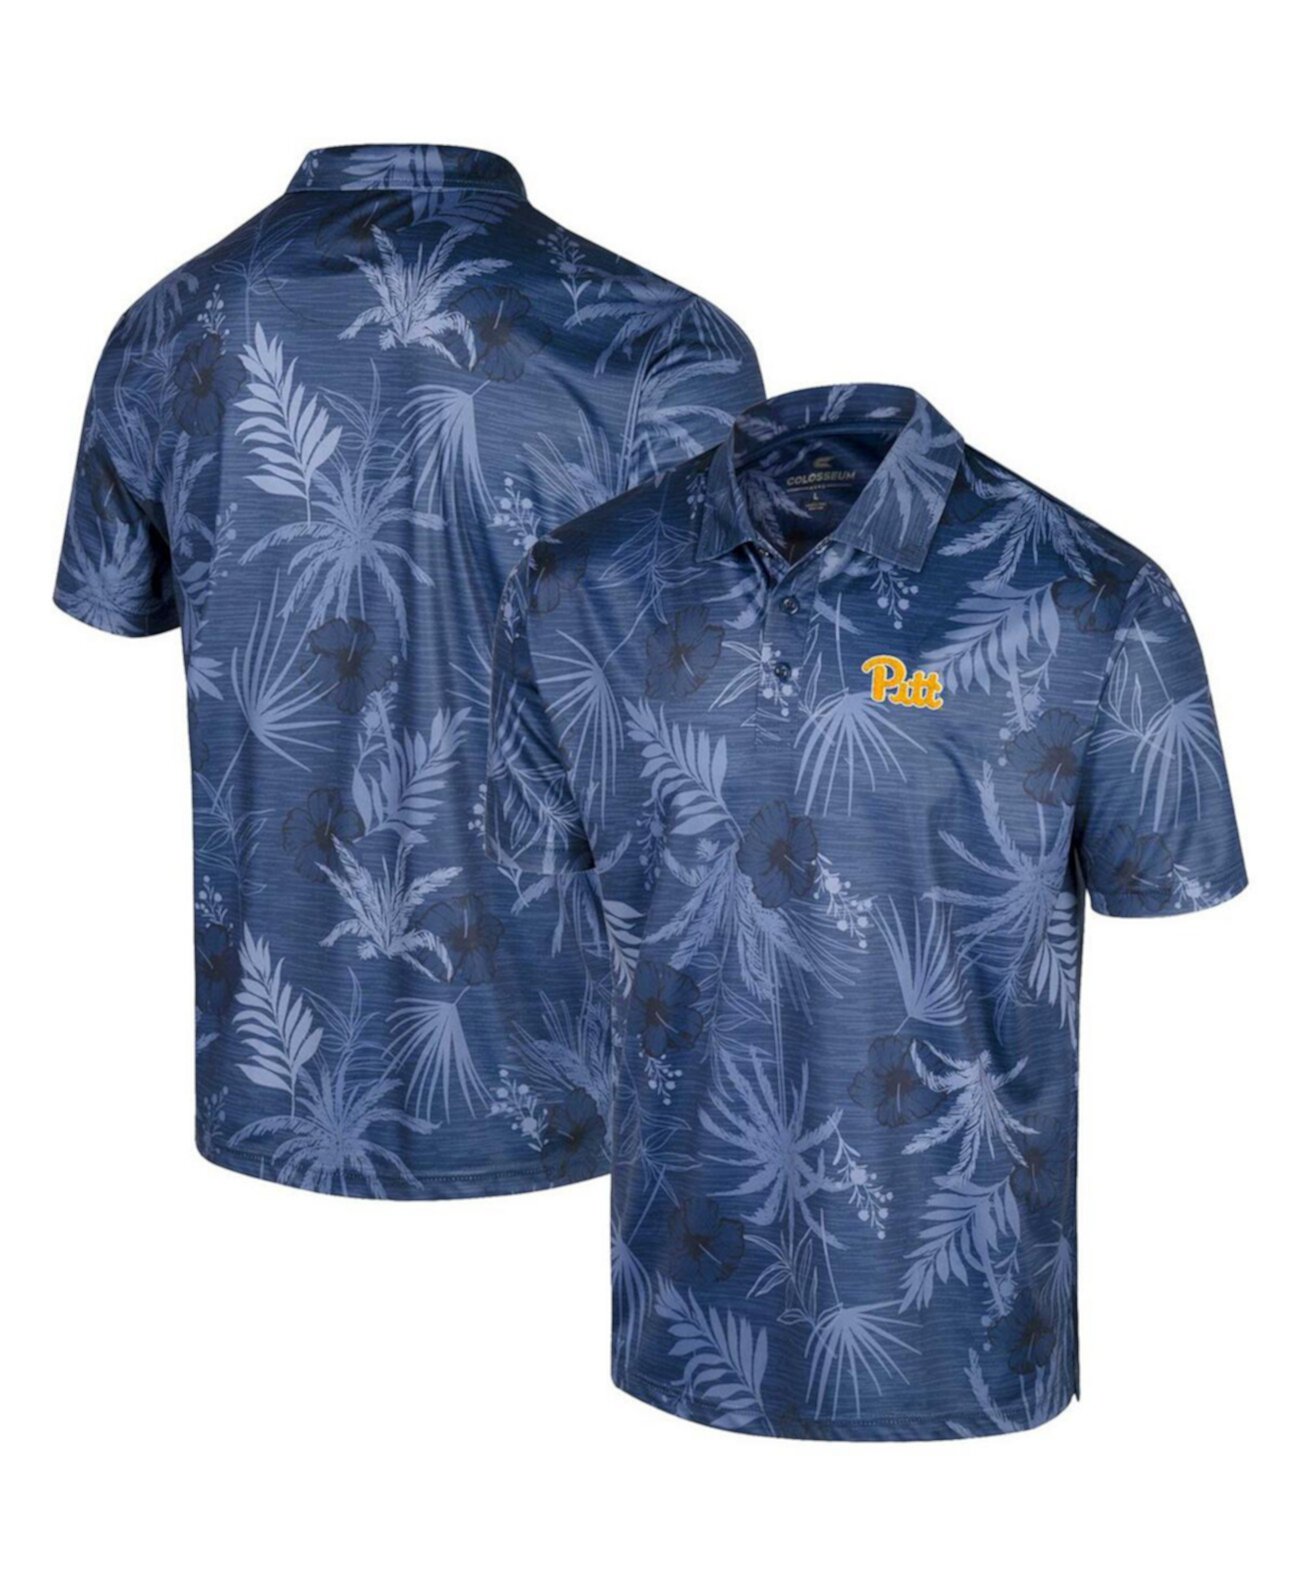 Мужская рубашка-поло Royal Pitt Panthers Palms Team Colosseum